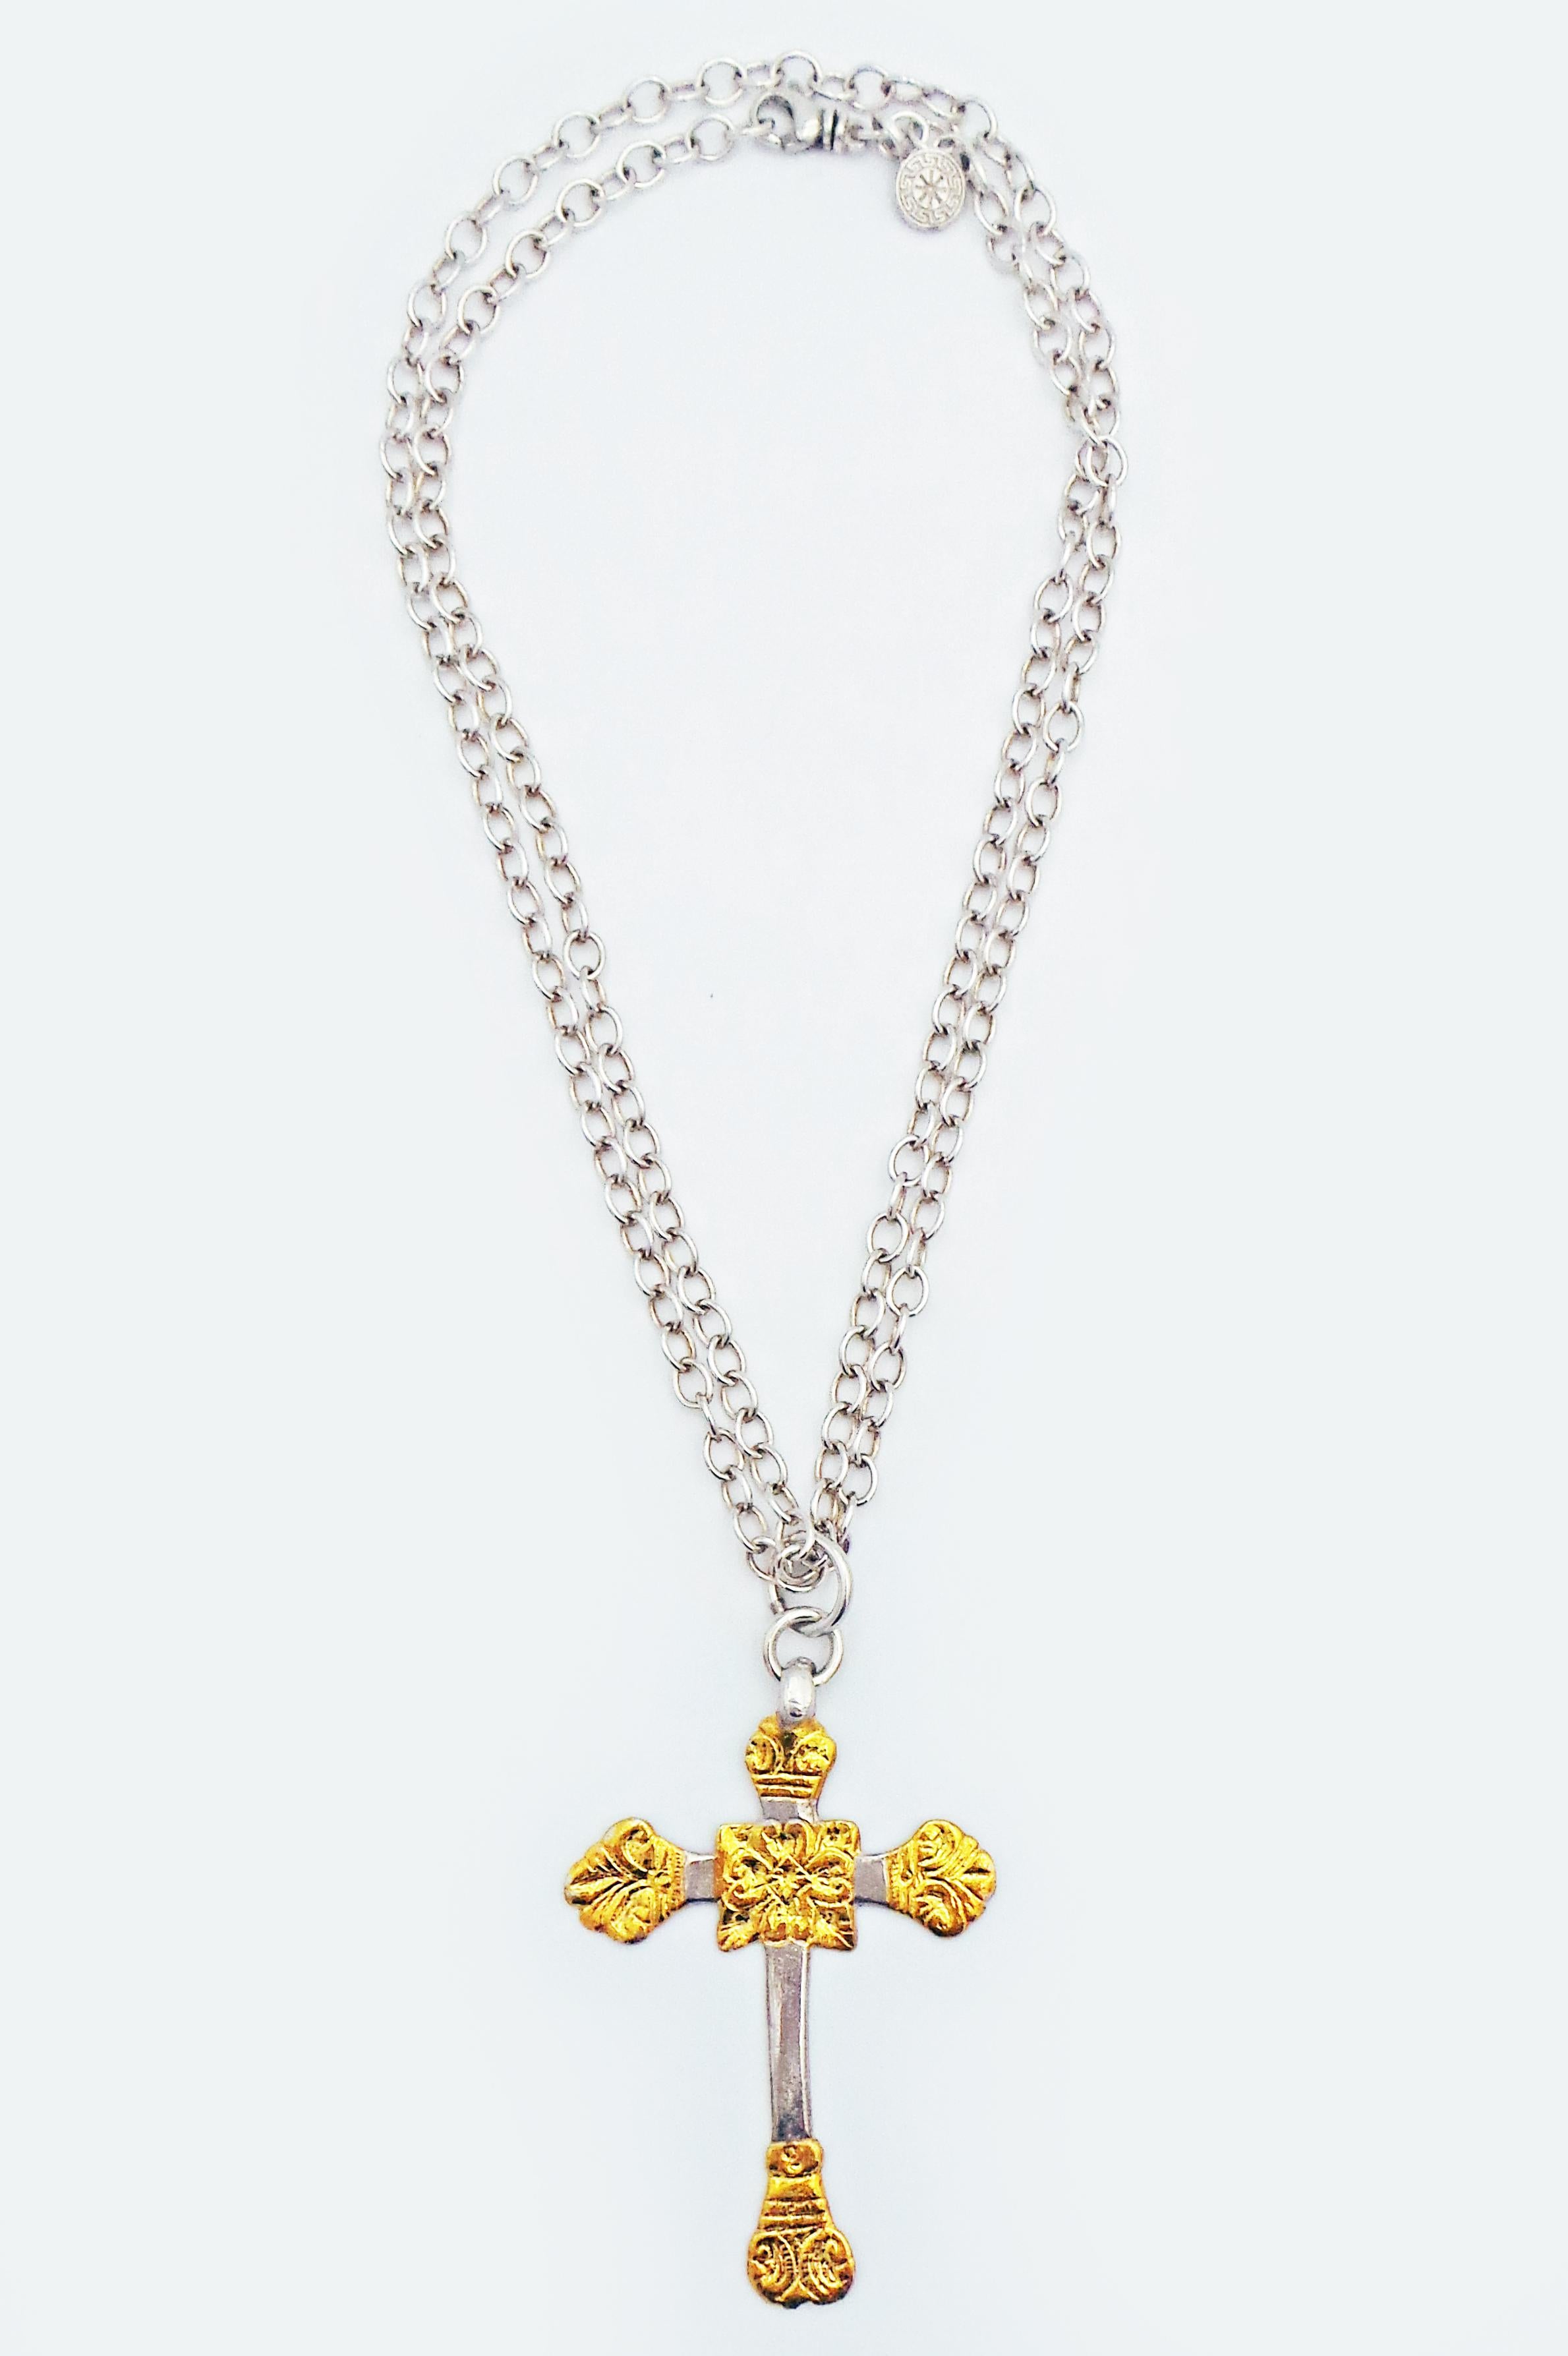 Pendentif en forme de croix de style antique en argent sterling avec superposition de Keum-Boo en or jaune 24k sur une chaîne câble en argent sterling. Le Keum-Boo est une ancienne technique coréenne qui consiste à fusionner de l'argent et de l'or